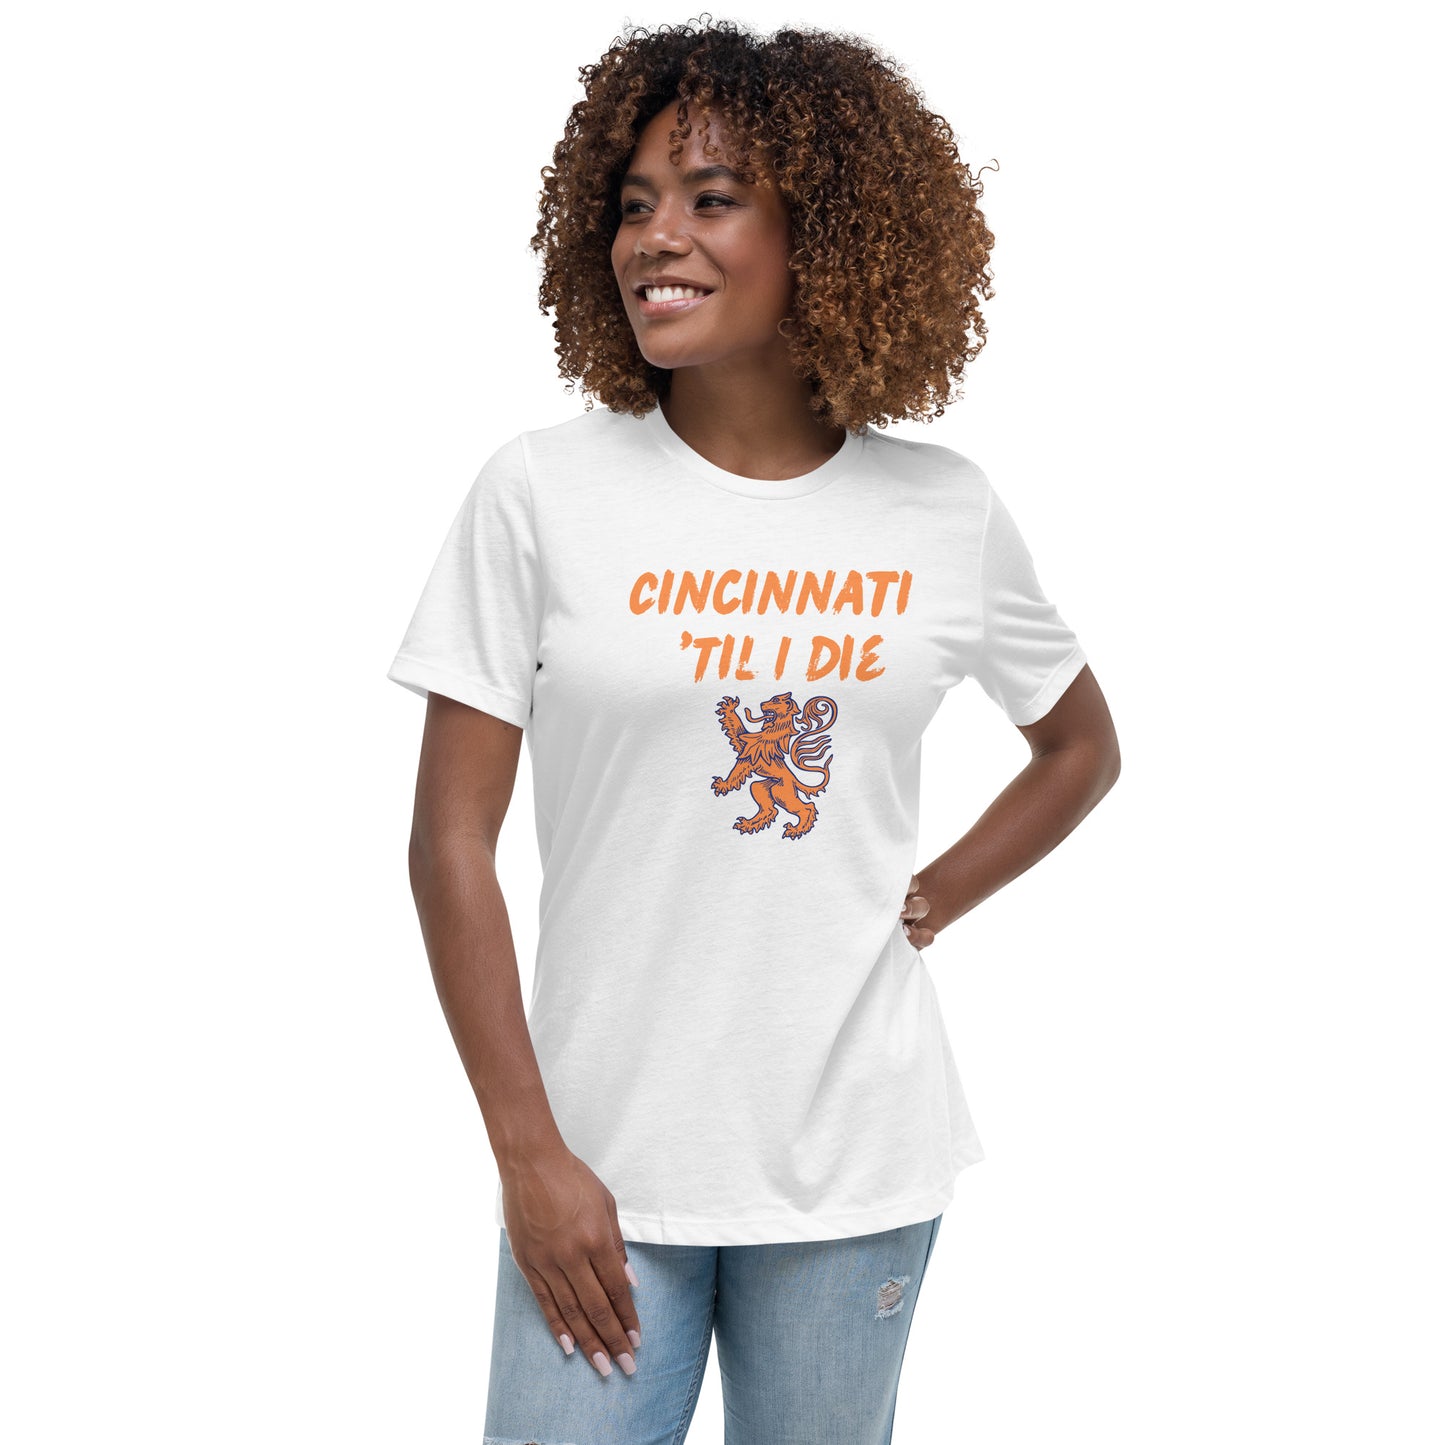 FC Cincinnati 'Til I Die Women's Relaxed T-Shirt